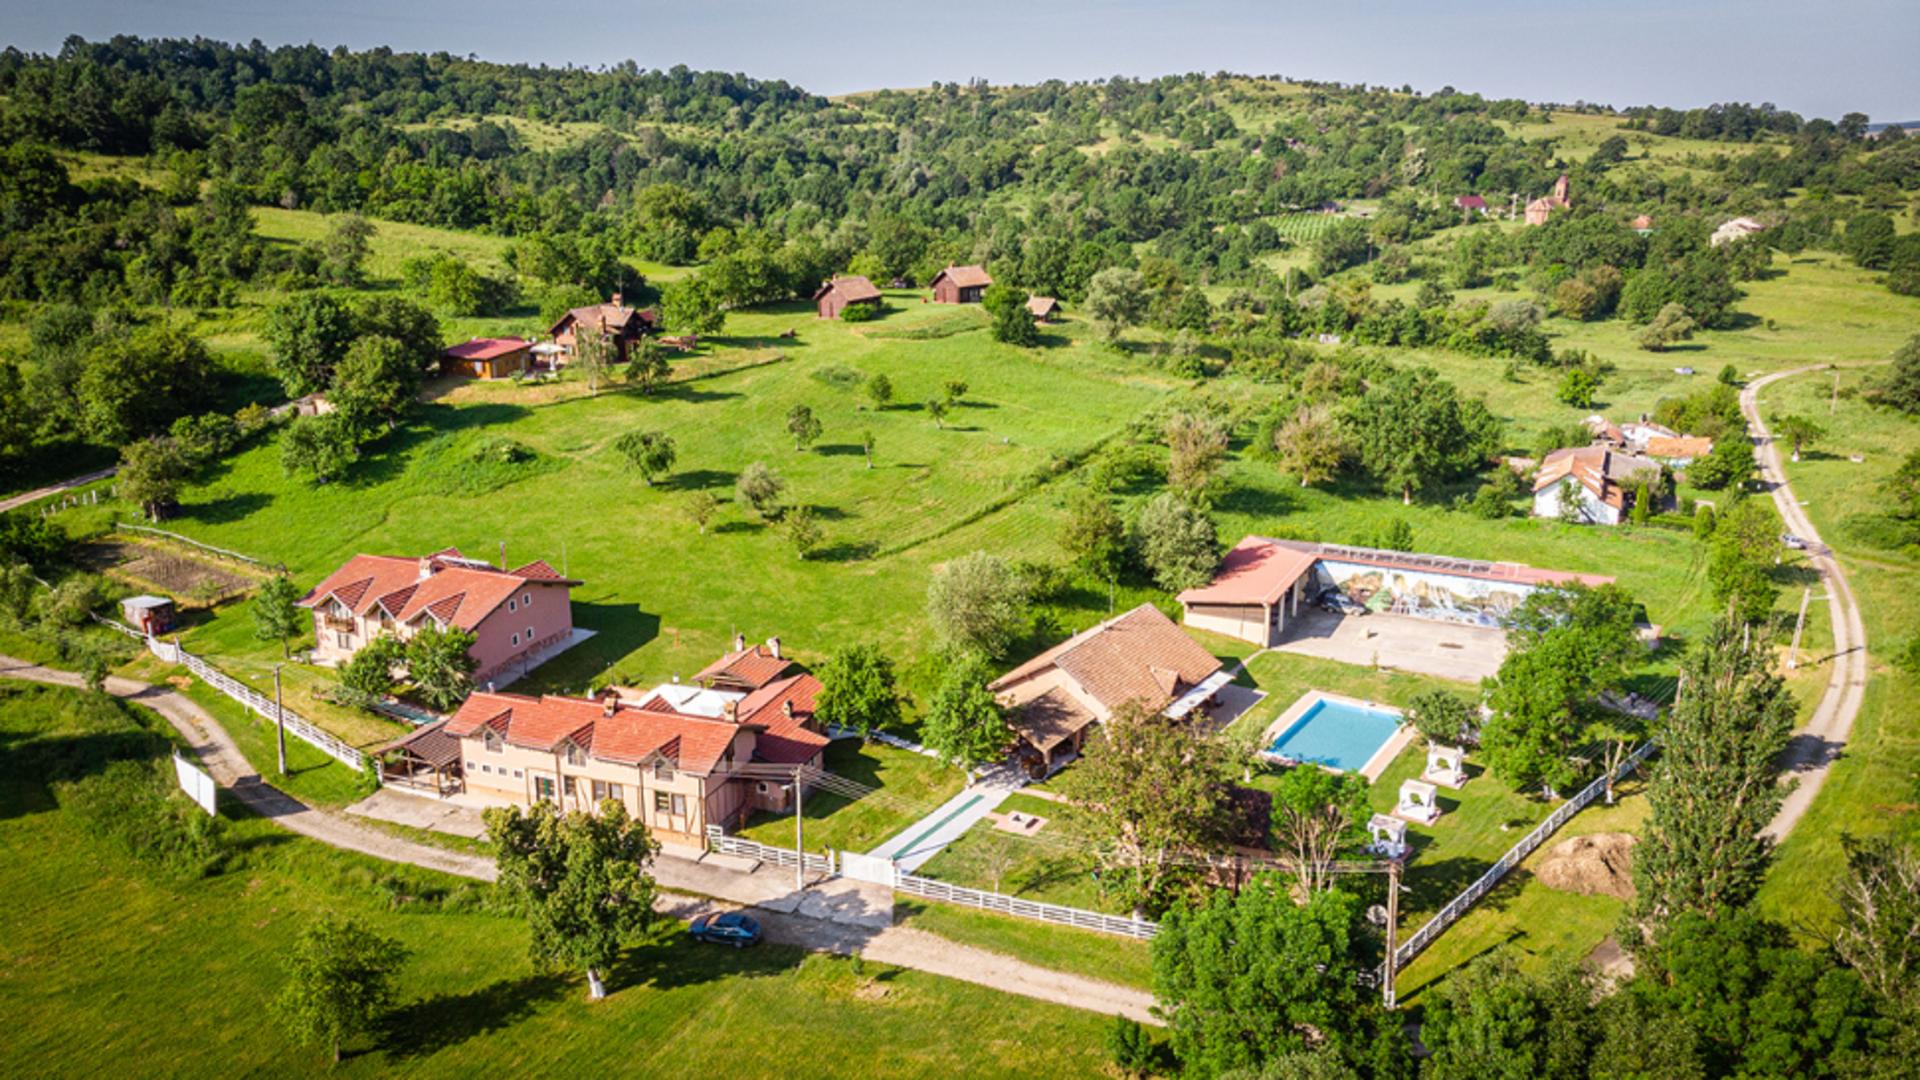 Cum ajung pământurile României pe mâinile străinilor – Resort de lux în Arad, în satul cu 10 oameni cumpărat de un miliardar italian